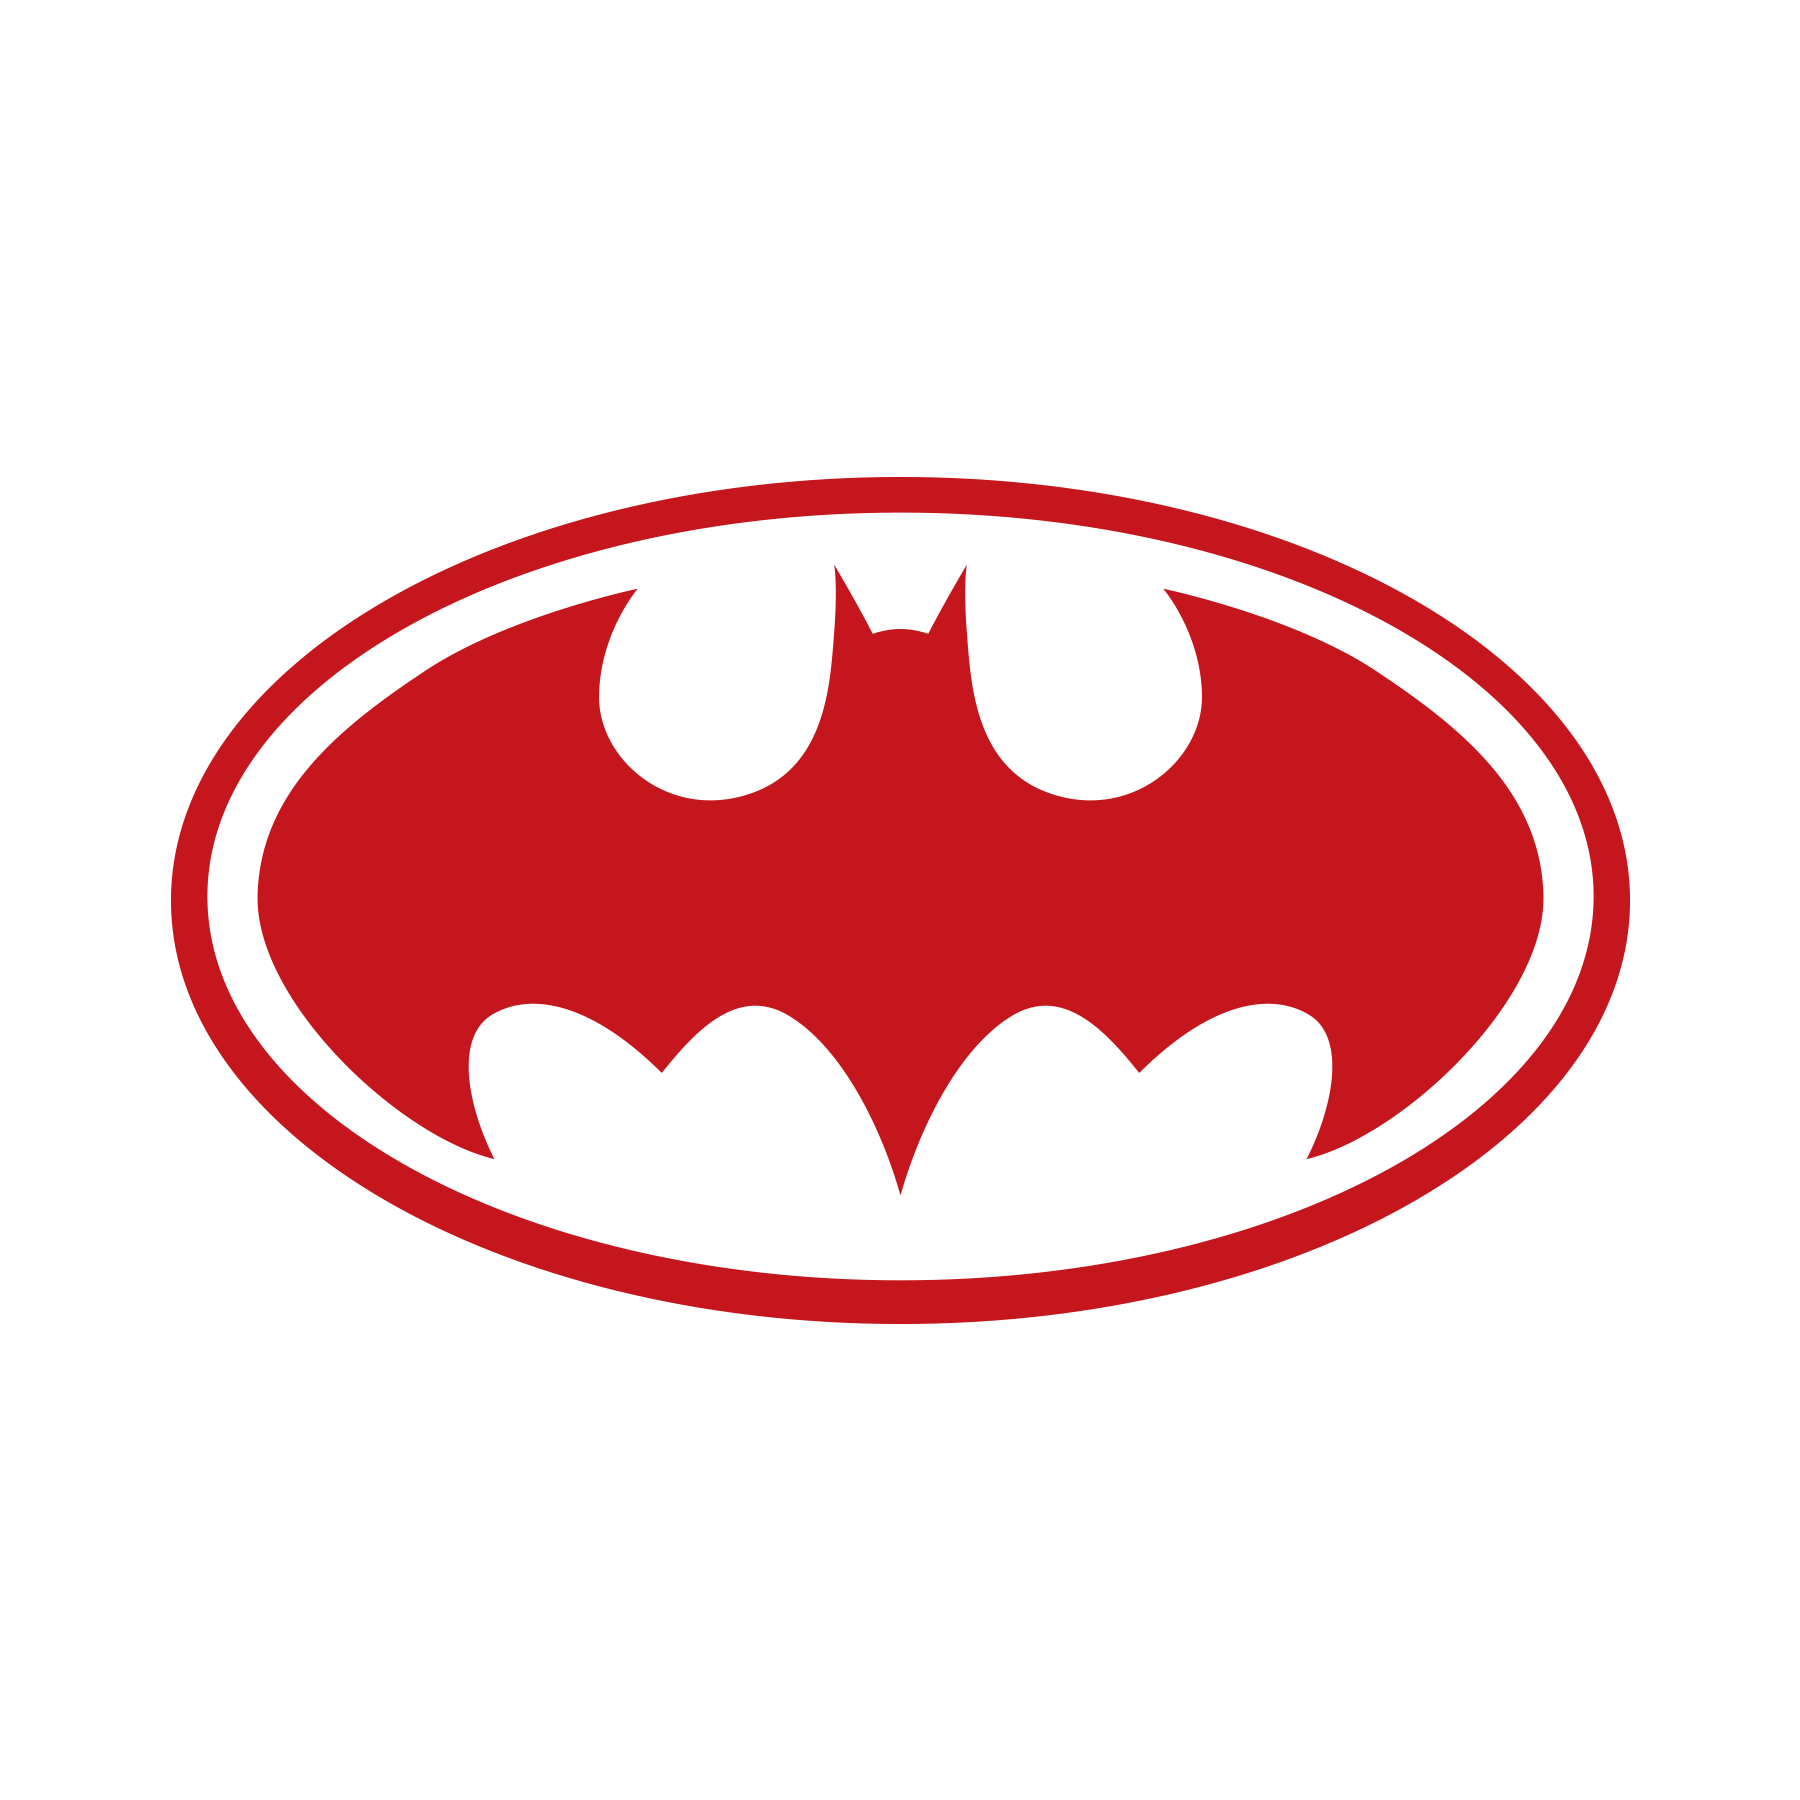 Batman Symbol PNG Images & PSDs for Download | PixelSquid - S115978124